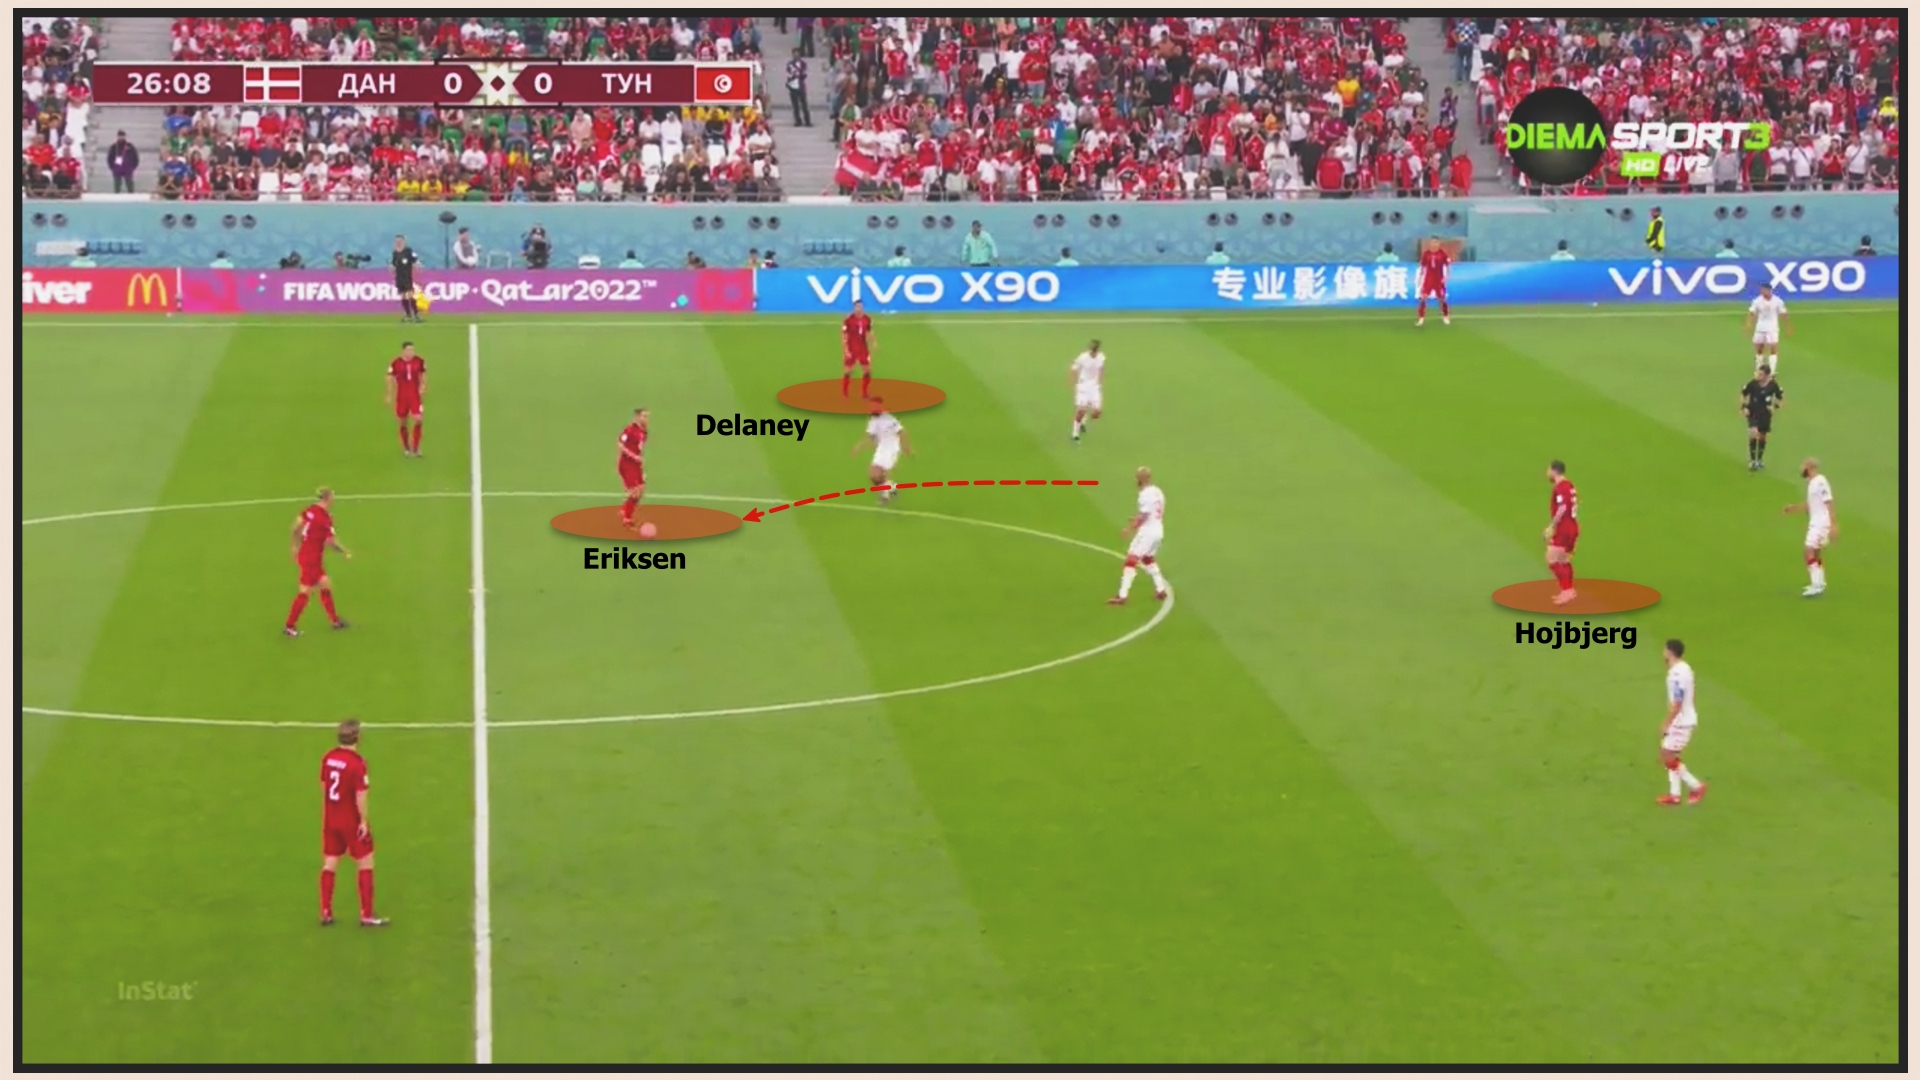 Đan Mạch 0-0 Tunisia Đan Mạch bị hoá giải 5